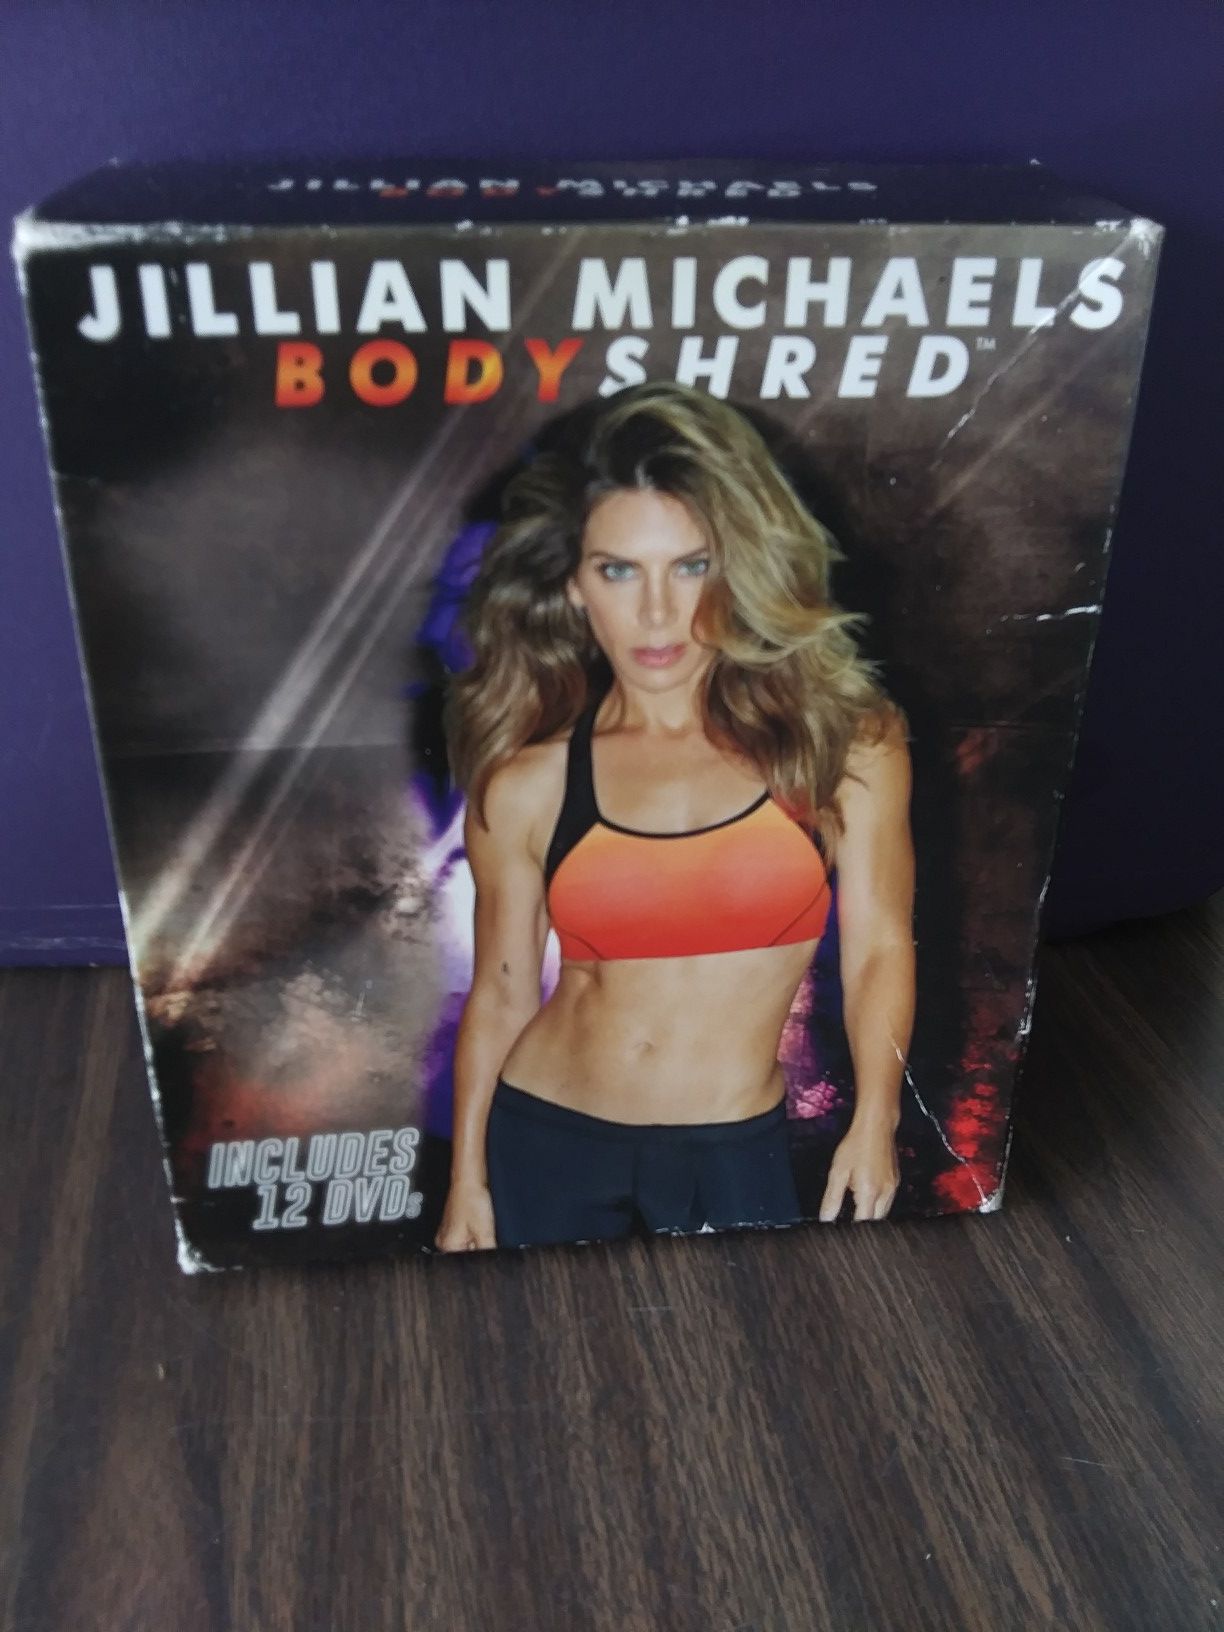 jillian michaels workout dvd set